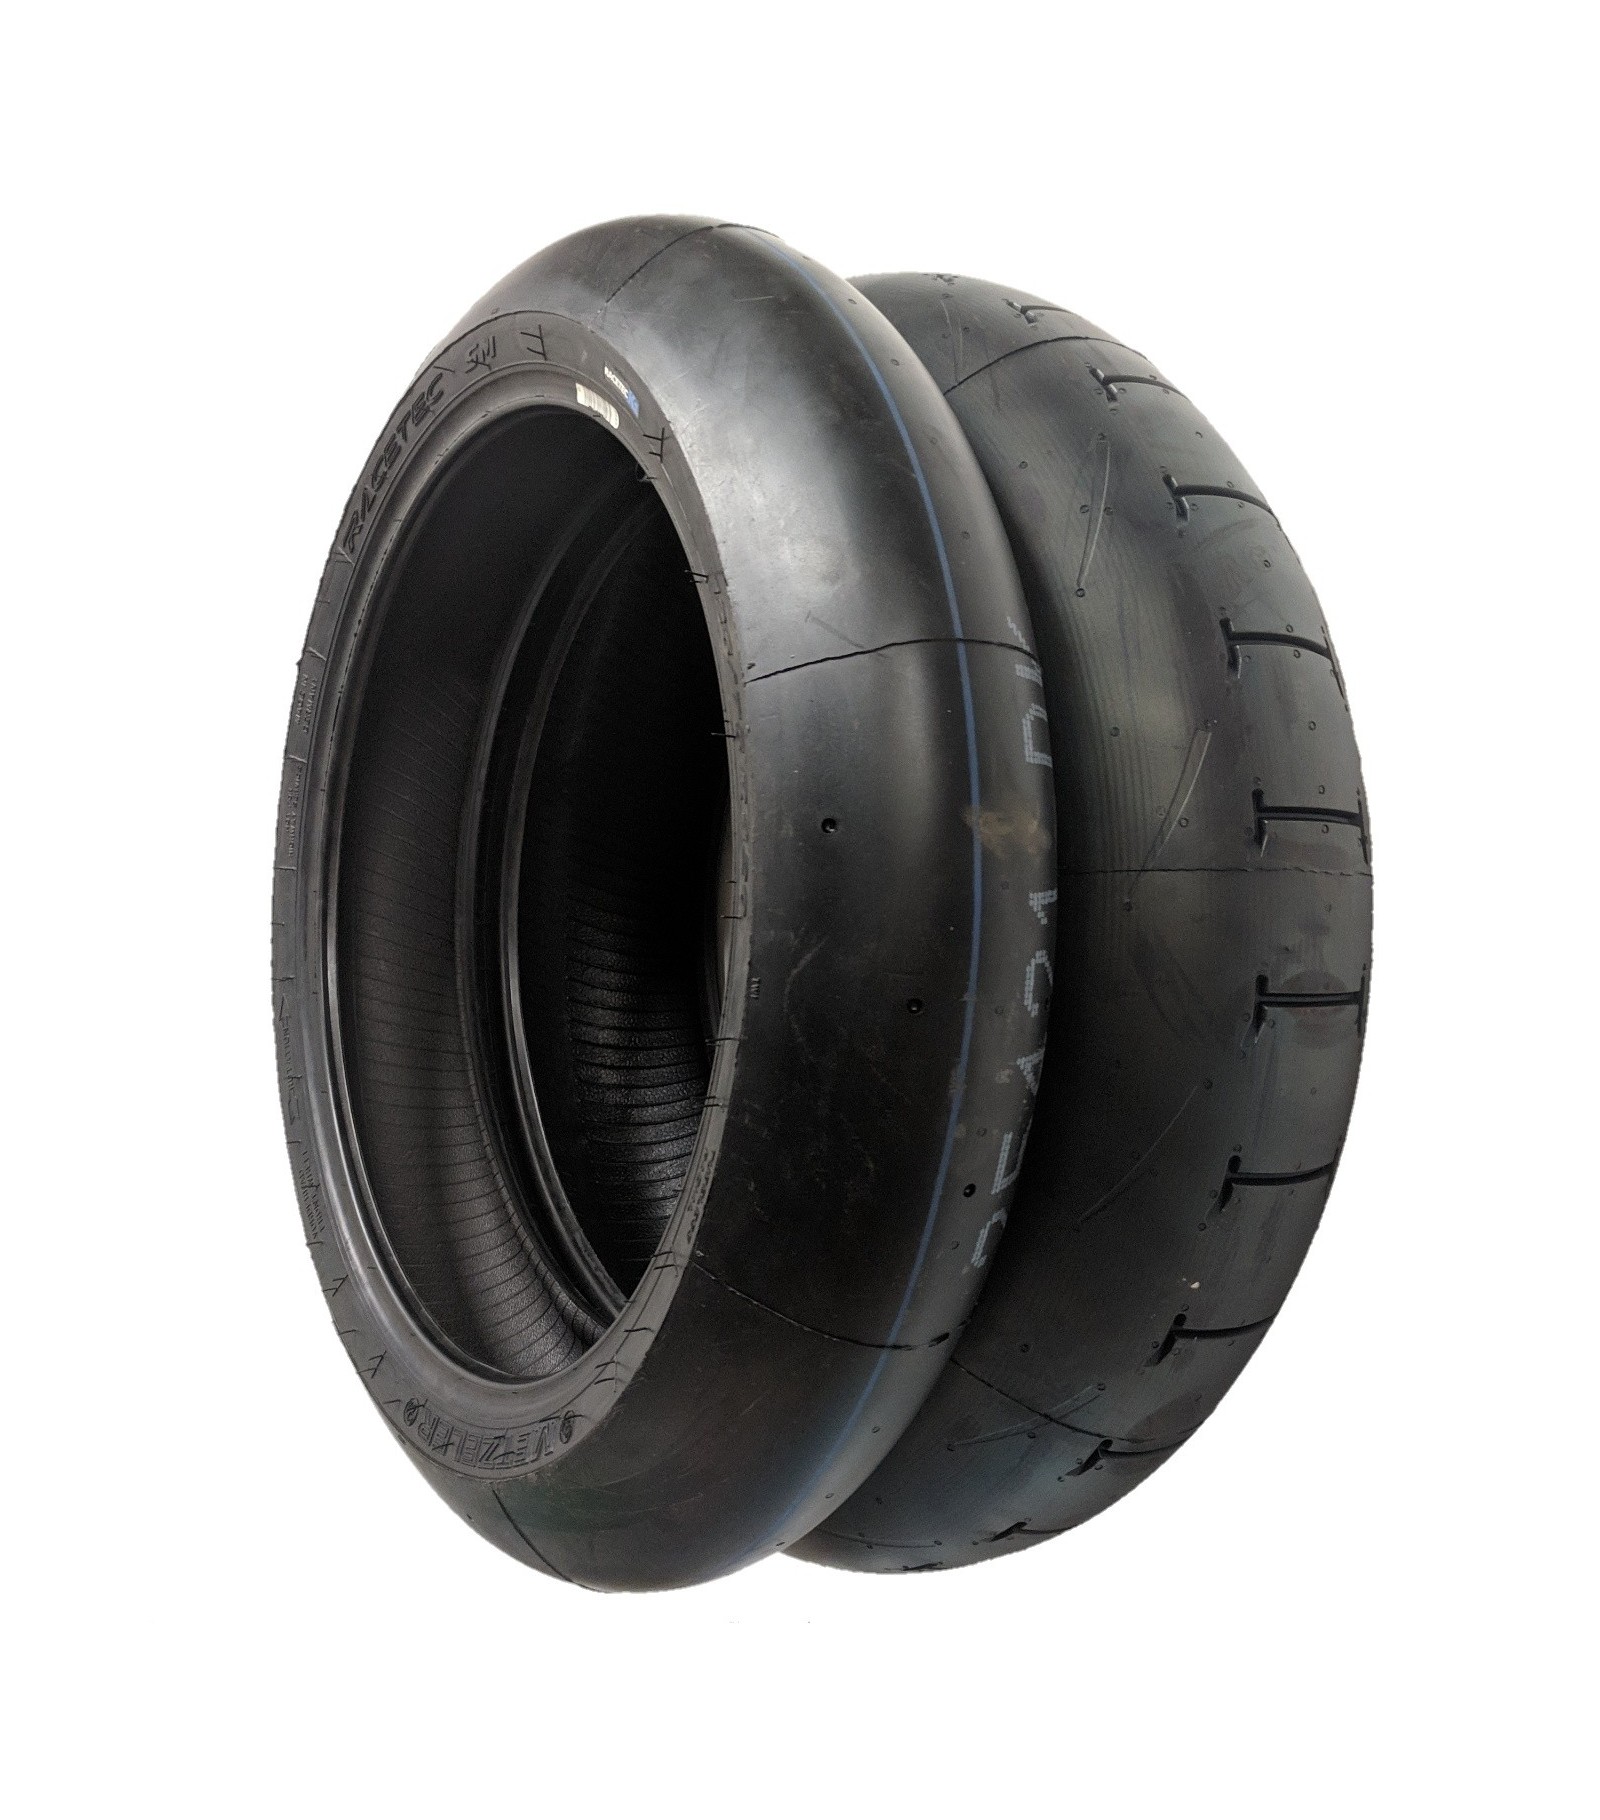 Metzeler Racetec SM Rain - Two Tyres - Discount motorcycle tyres